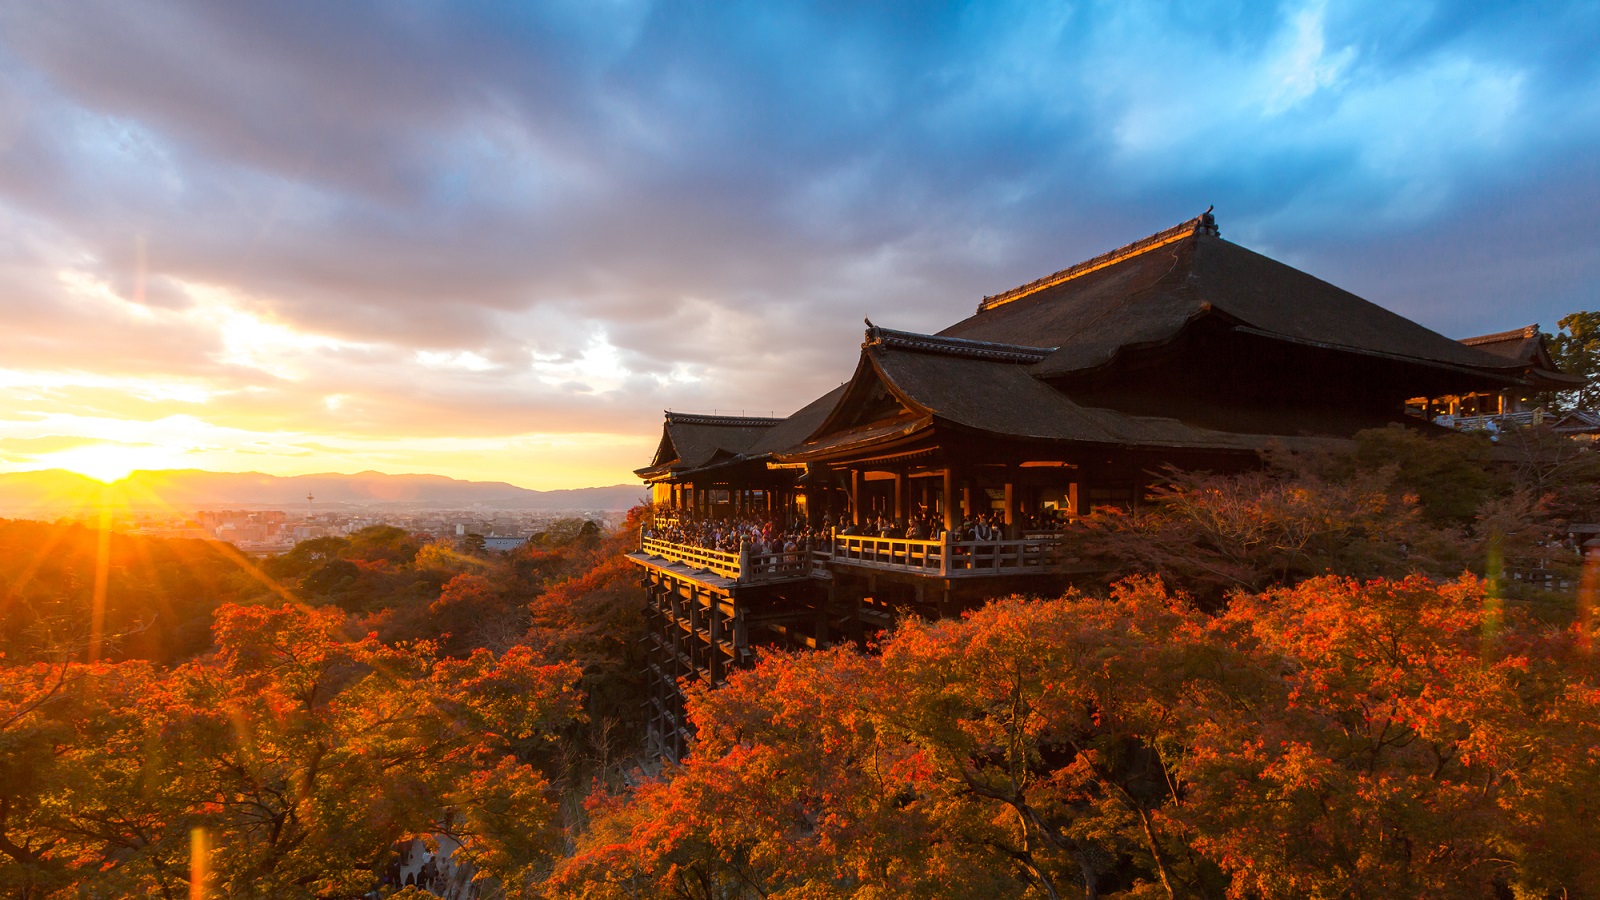 【京都観光】音羽山「清水寺」清水の舞台で知られる人気名所